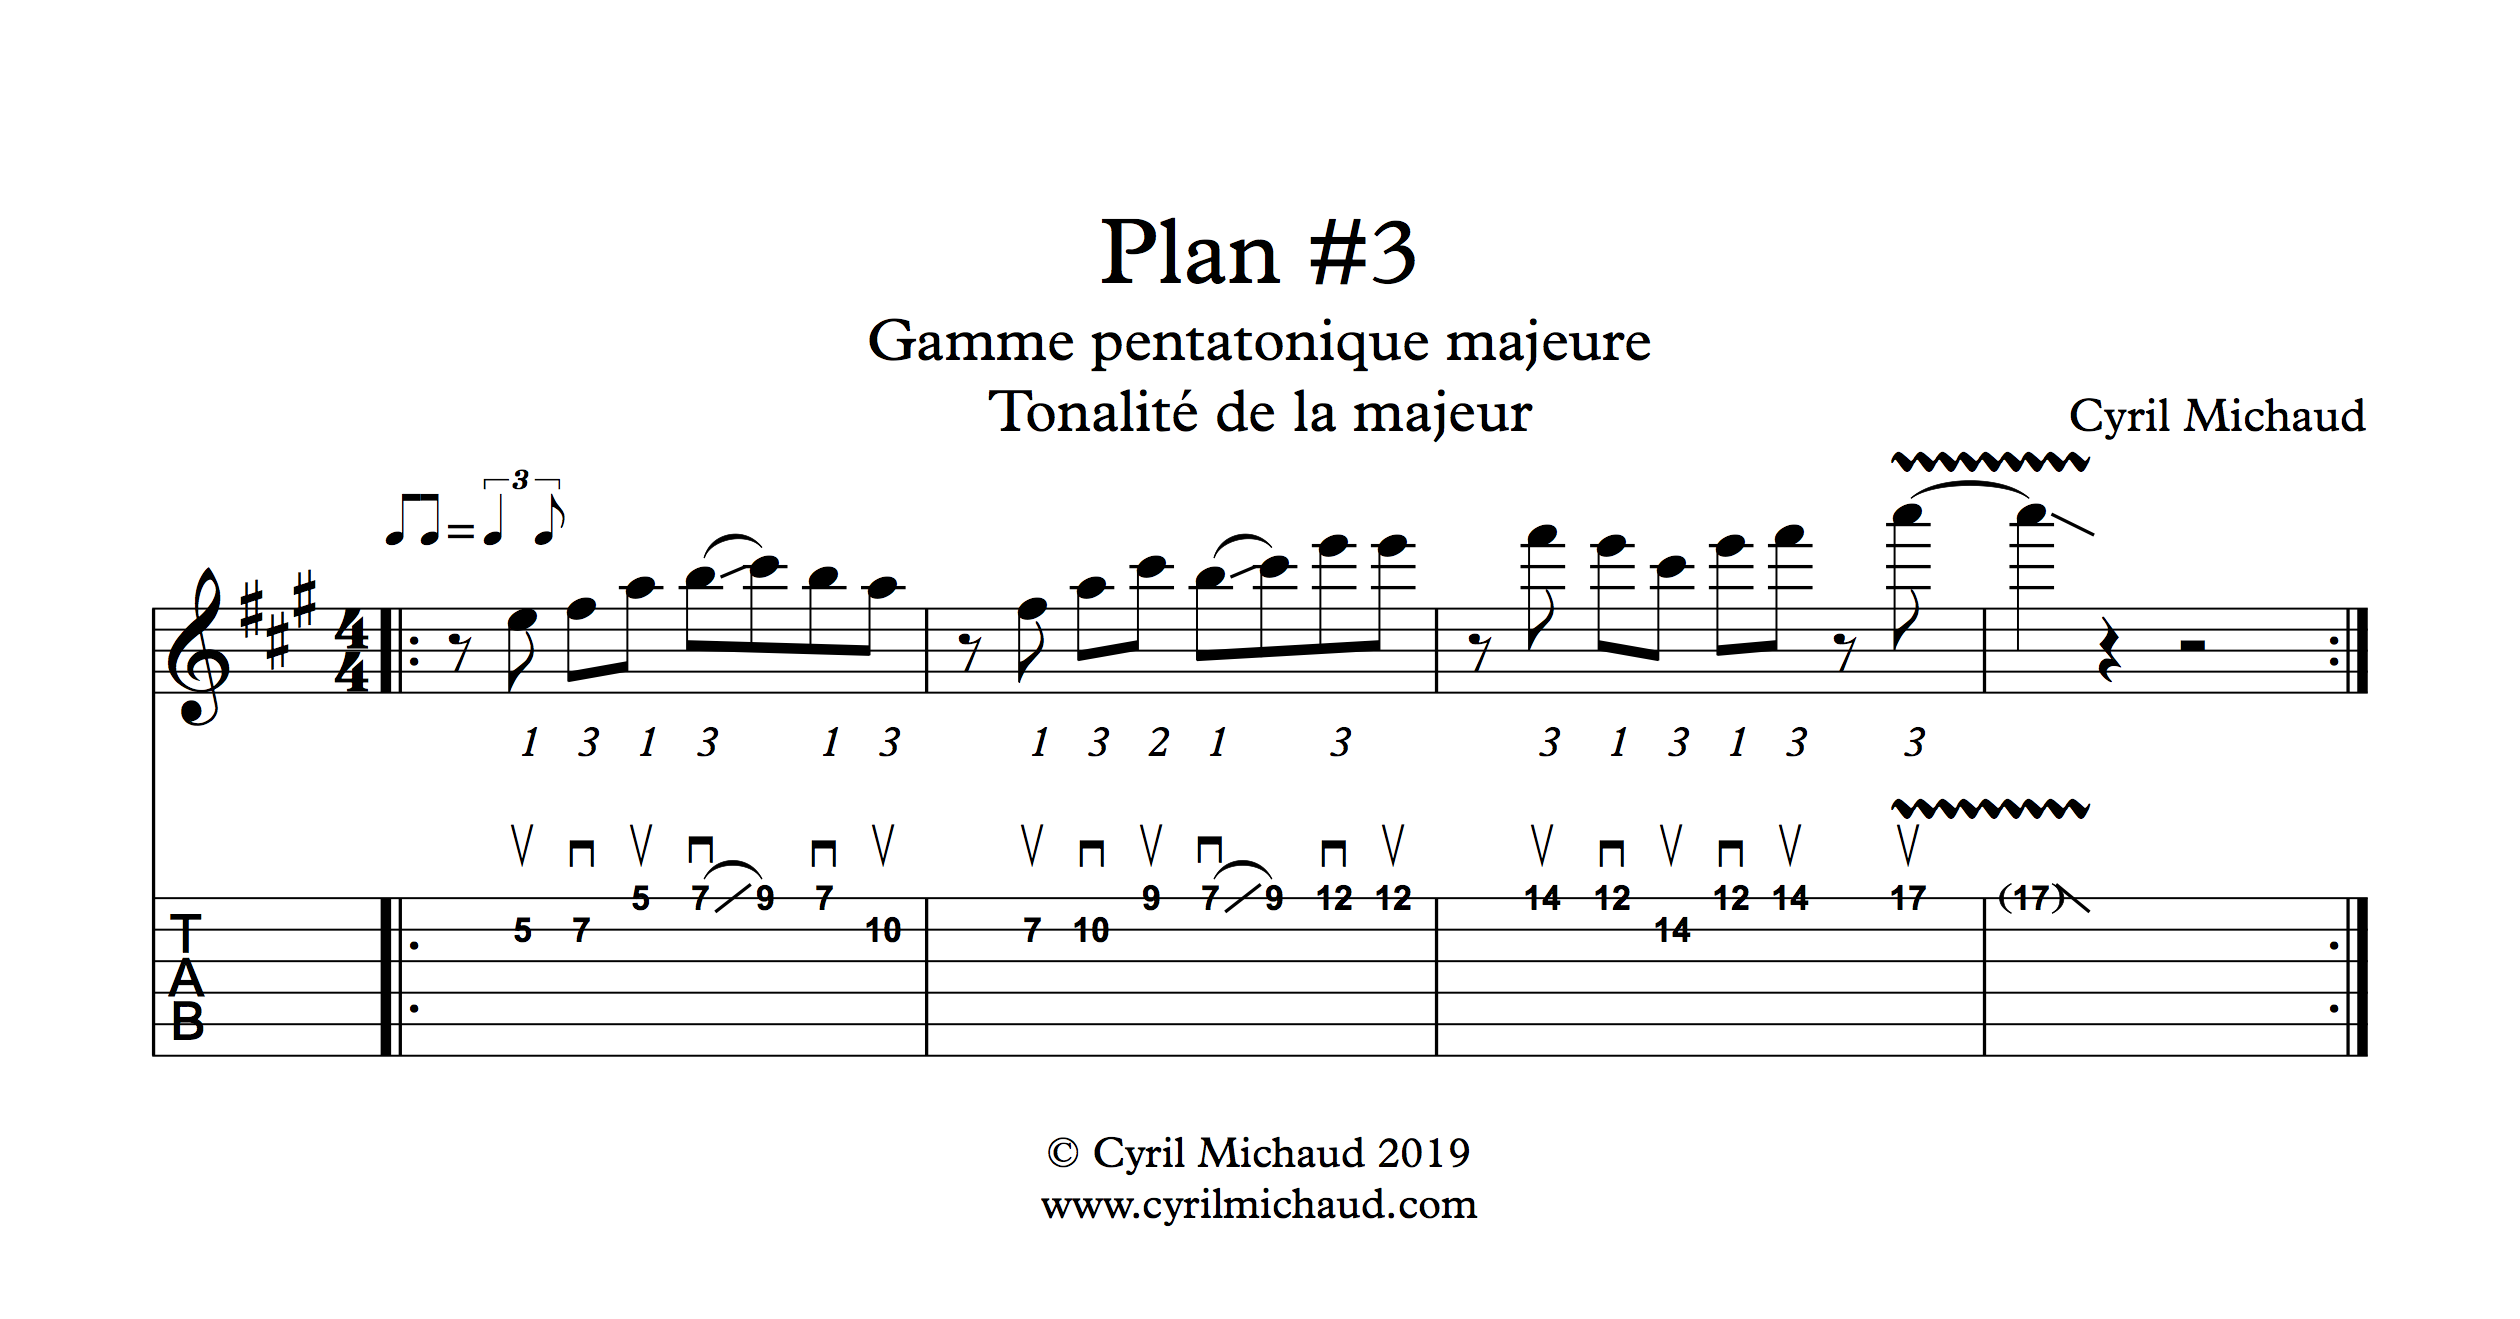 Plan blues sur la gamme pentatonique majeure (3)